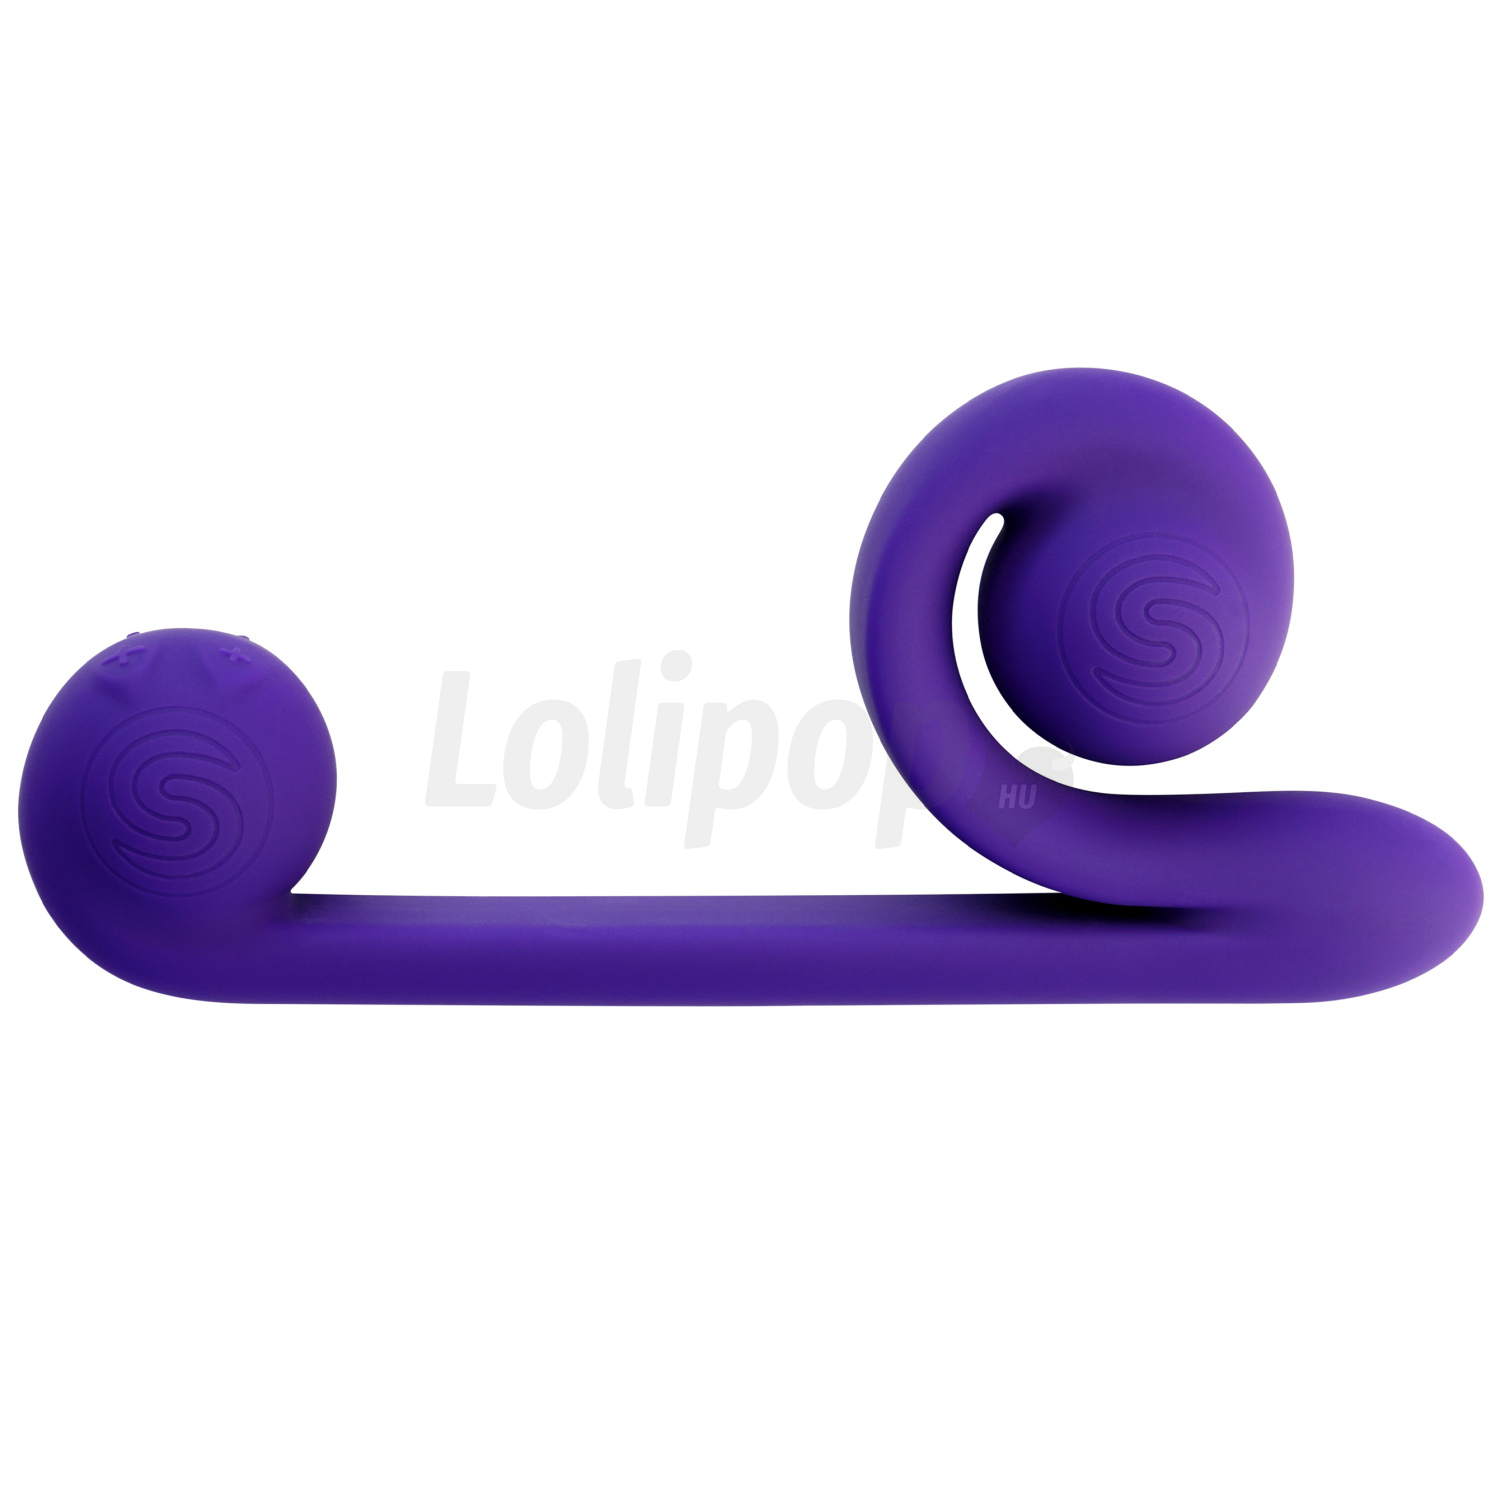 Snail Vibe Duo - akkus, 3in1 stimulációs vibrátor (lila)